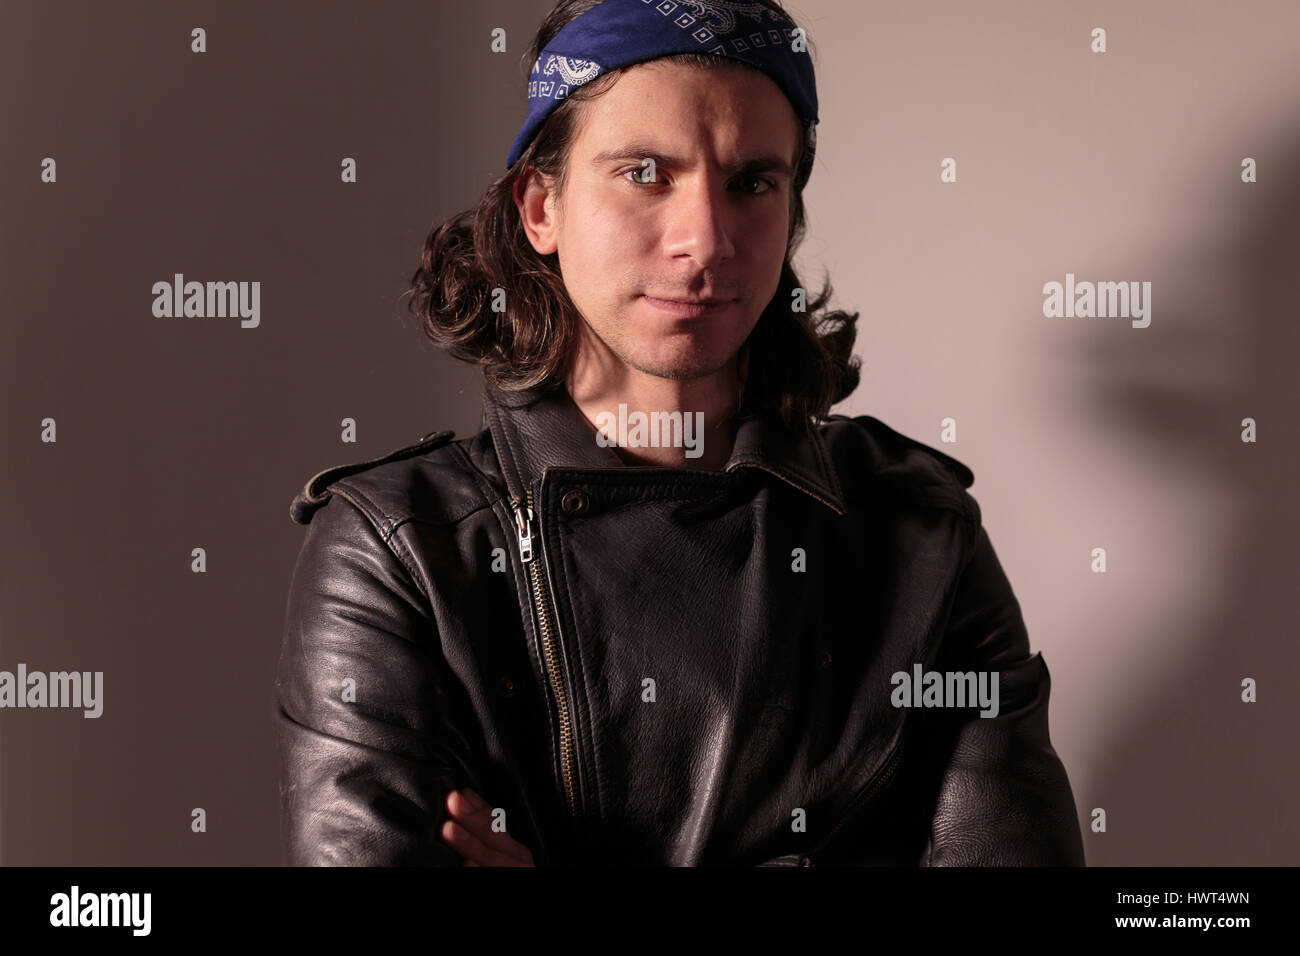 Jeune homme rocker dans bandana avec les cheveux longs Photo Stock - Alamy